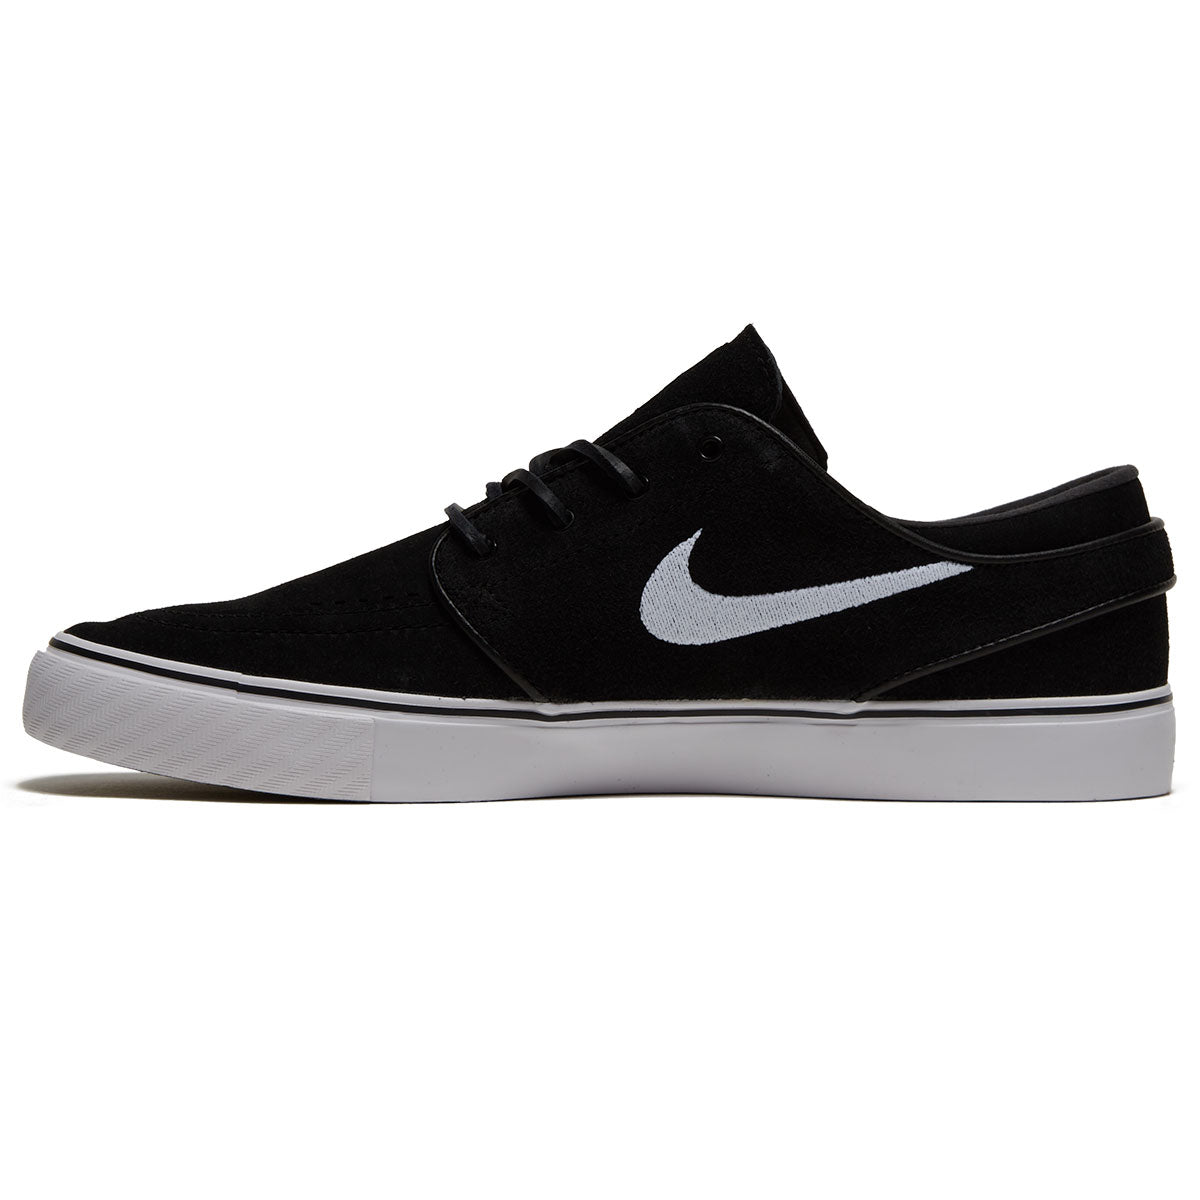 Nike SB Zoom Janoski OG Plus Shoes - Black/White/Black/White image 2